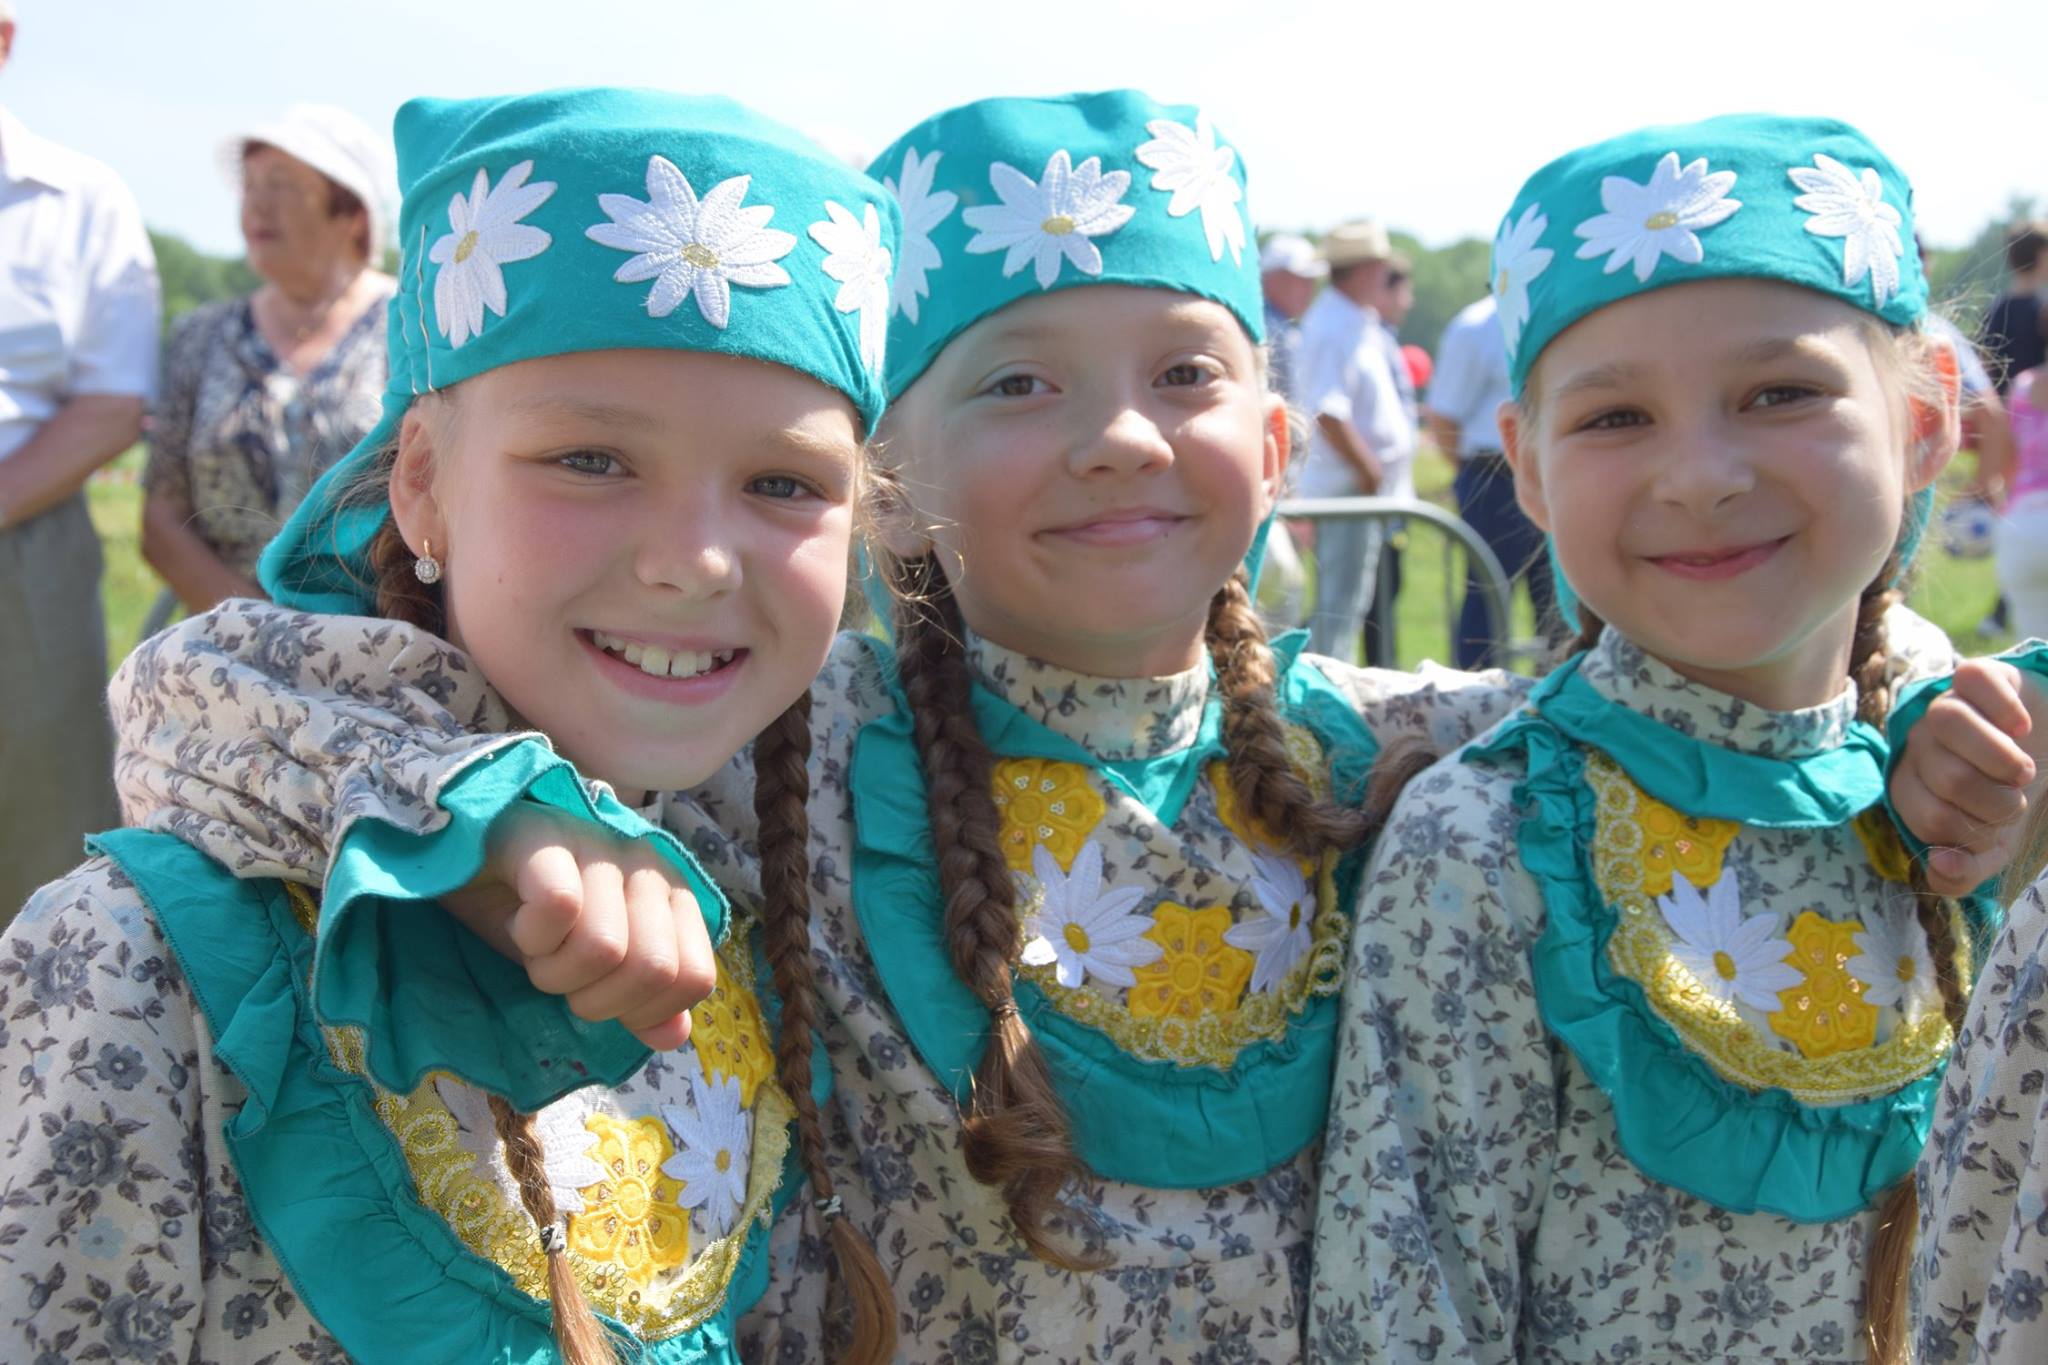 Сибирские татары национальный костюм Сибири